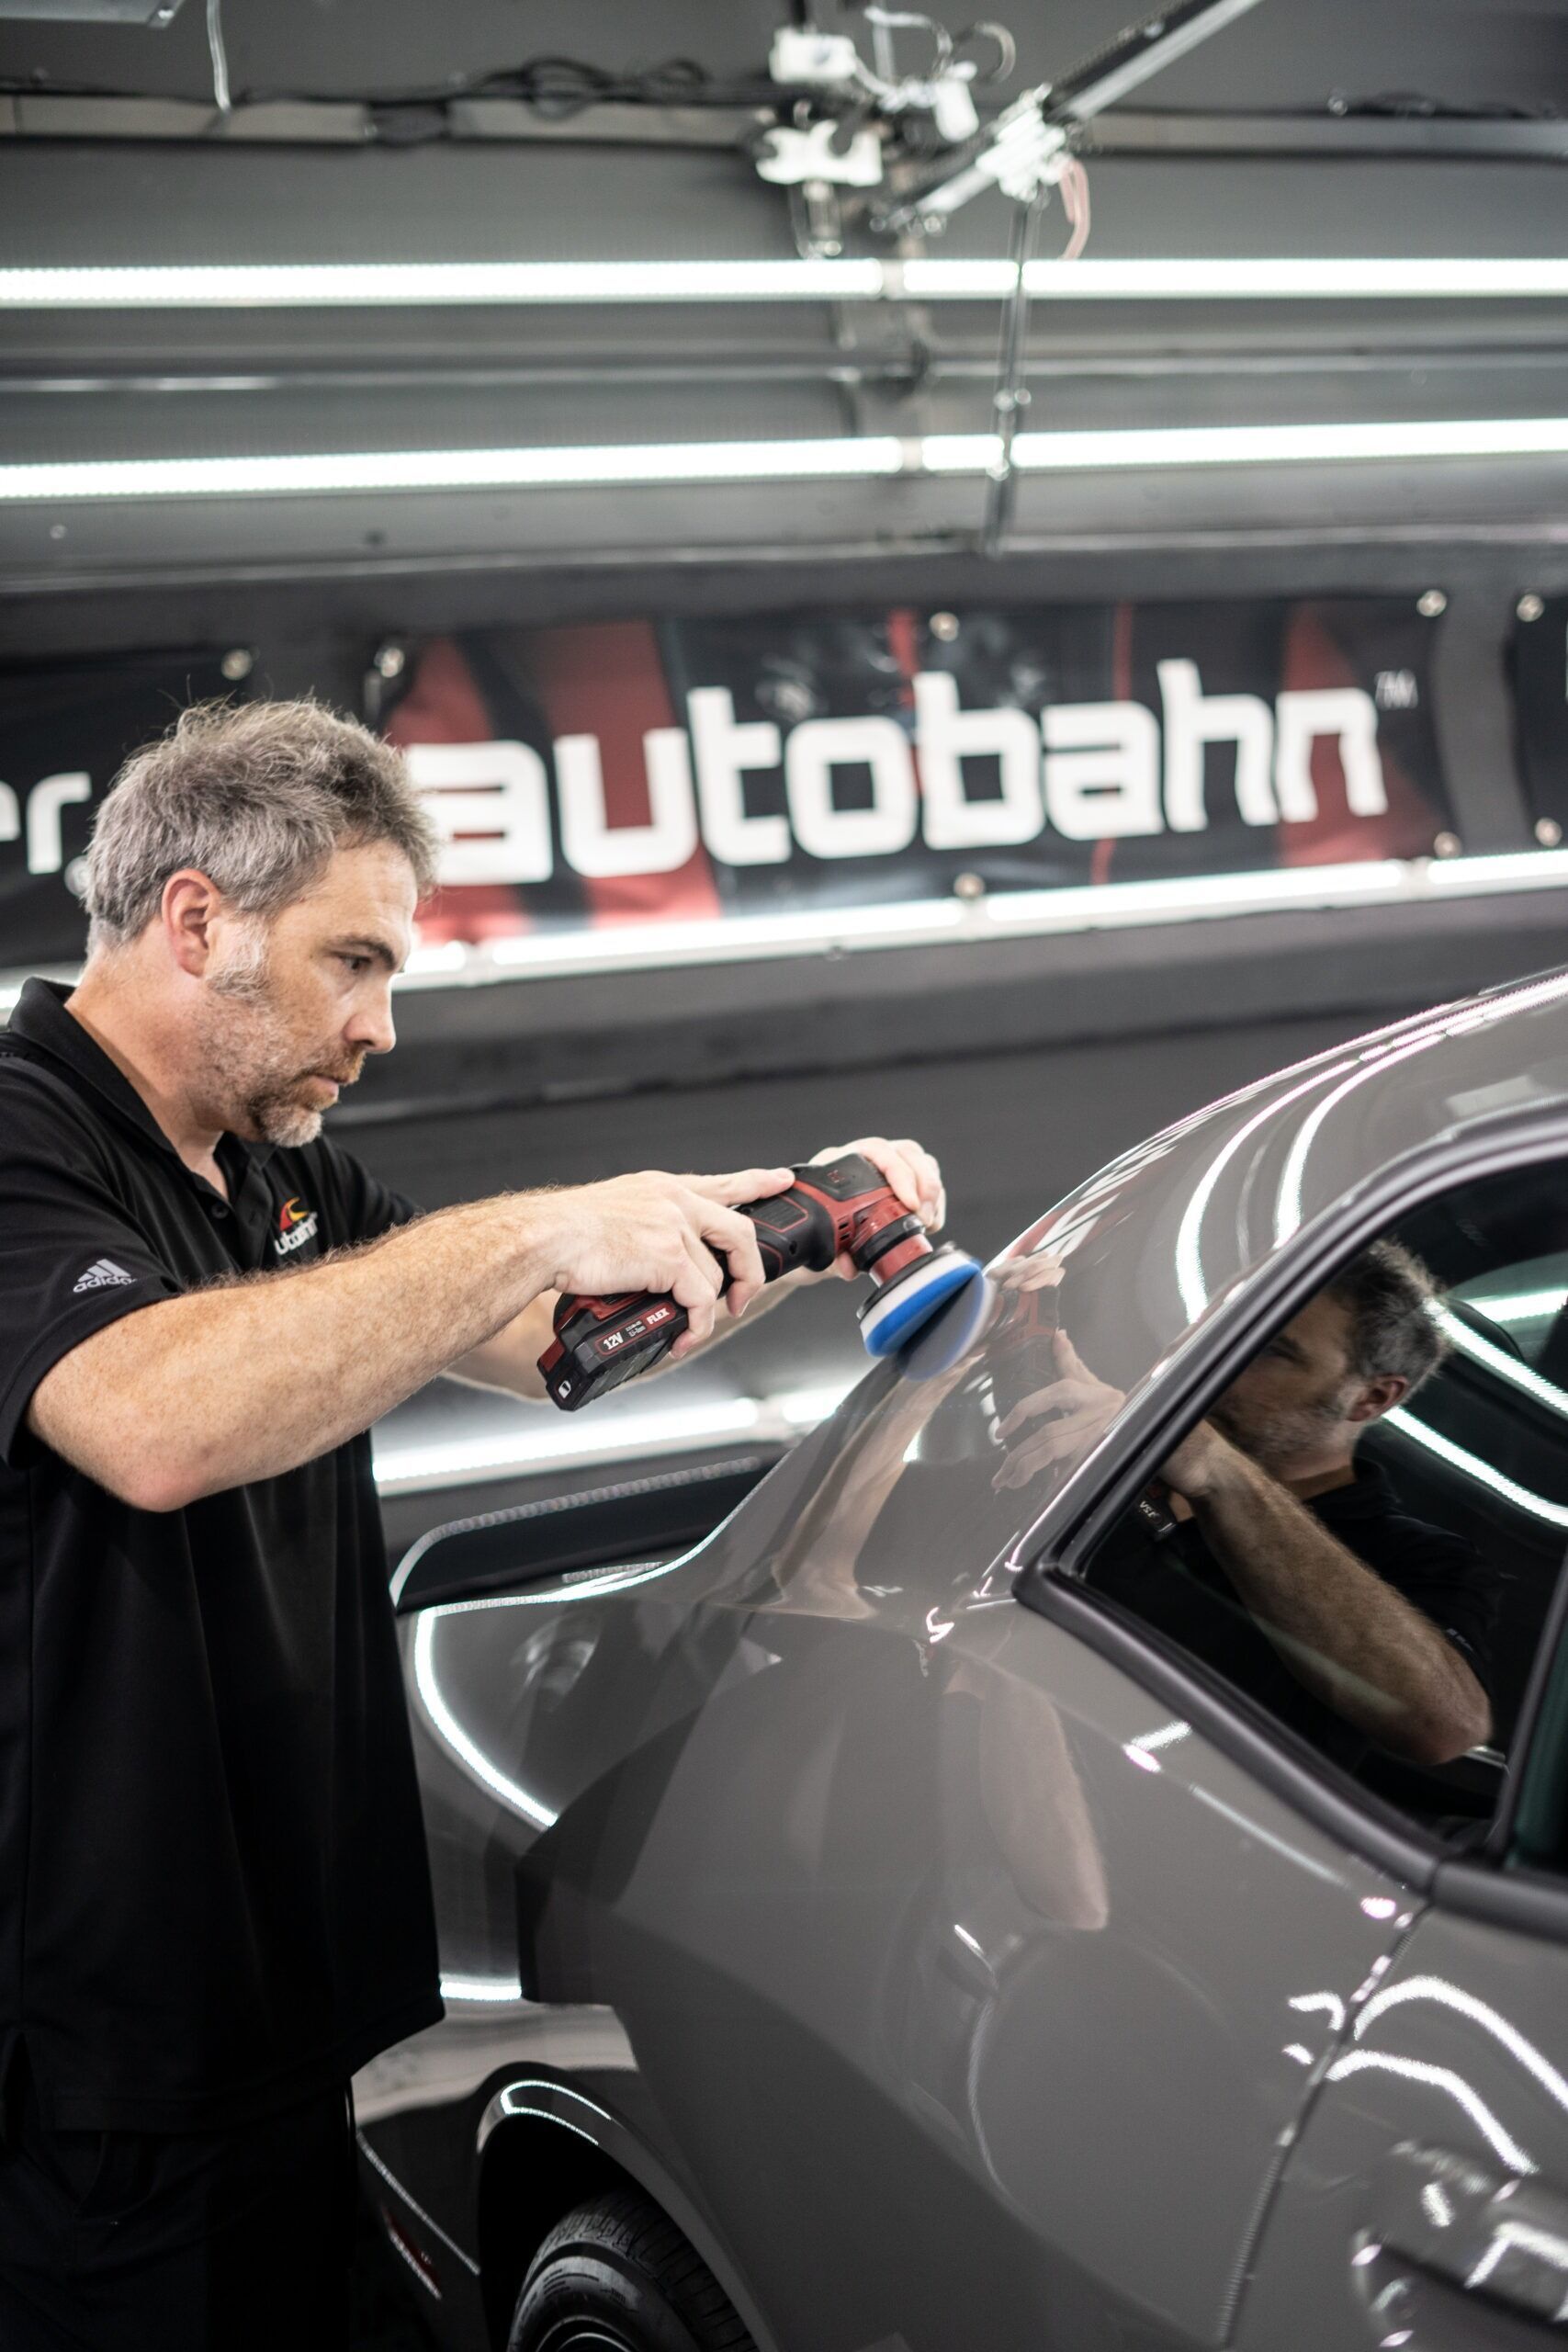 A man is polishing a car in a garage.